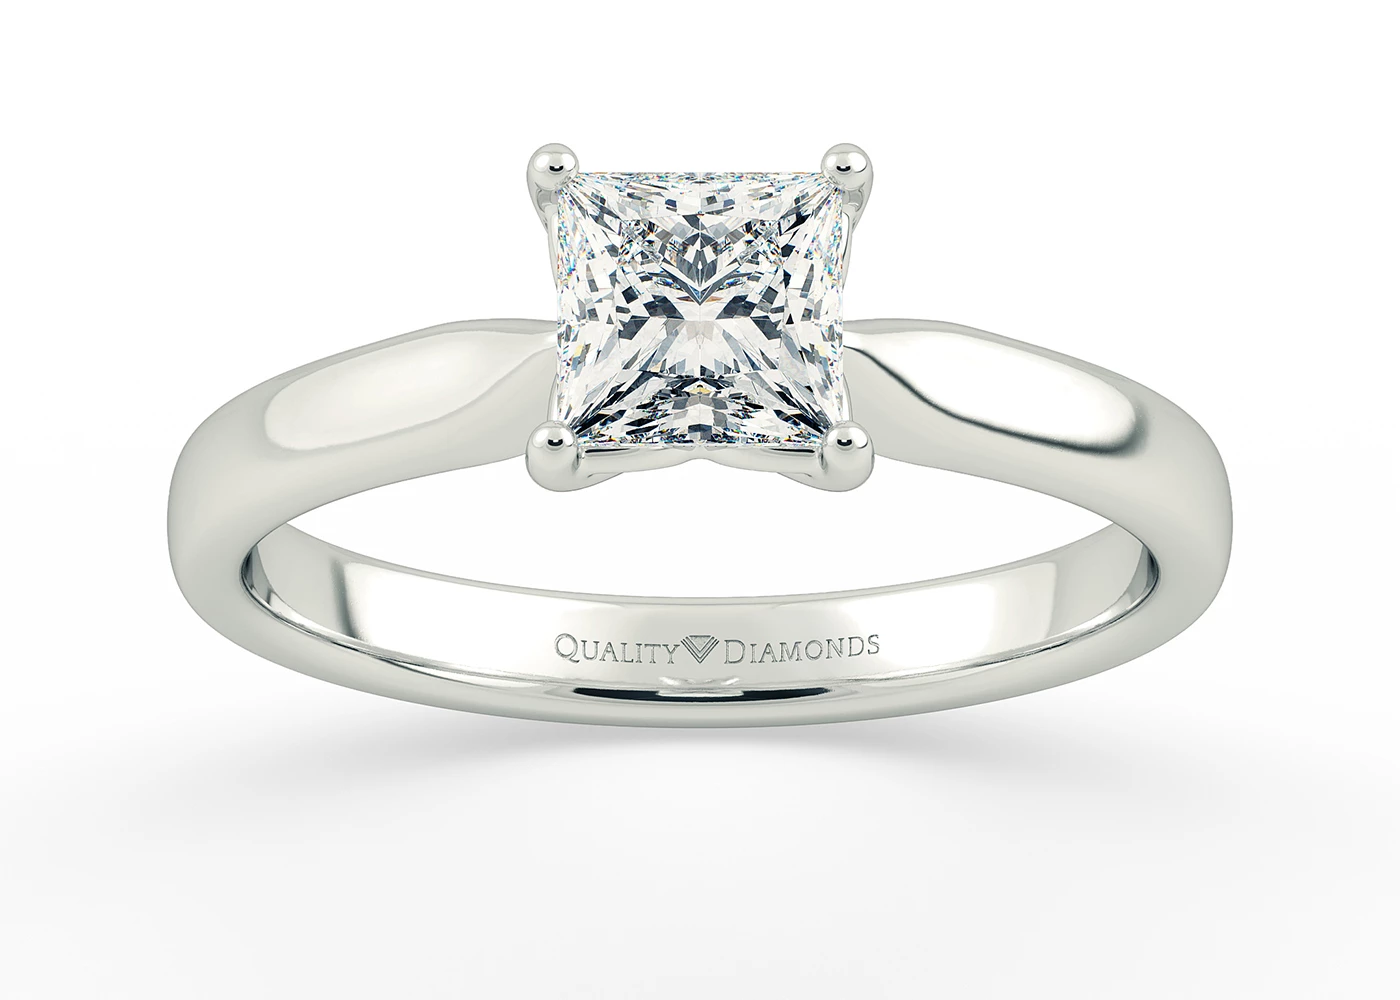 Princess Esme Diamond Rings in Platinum